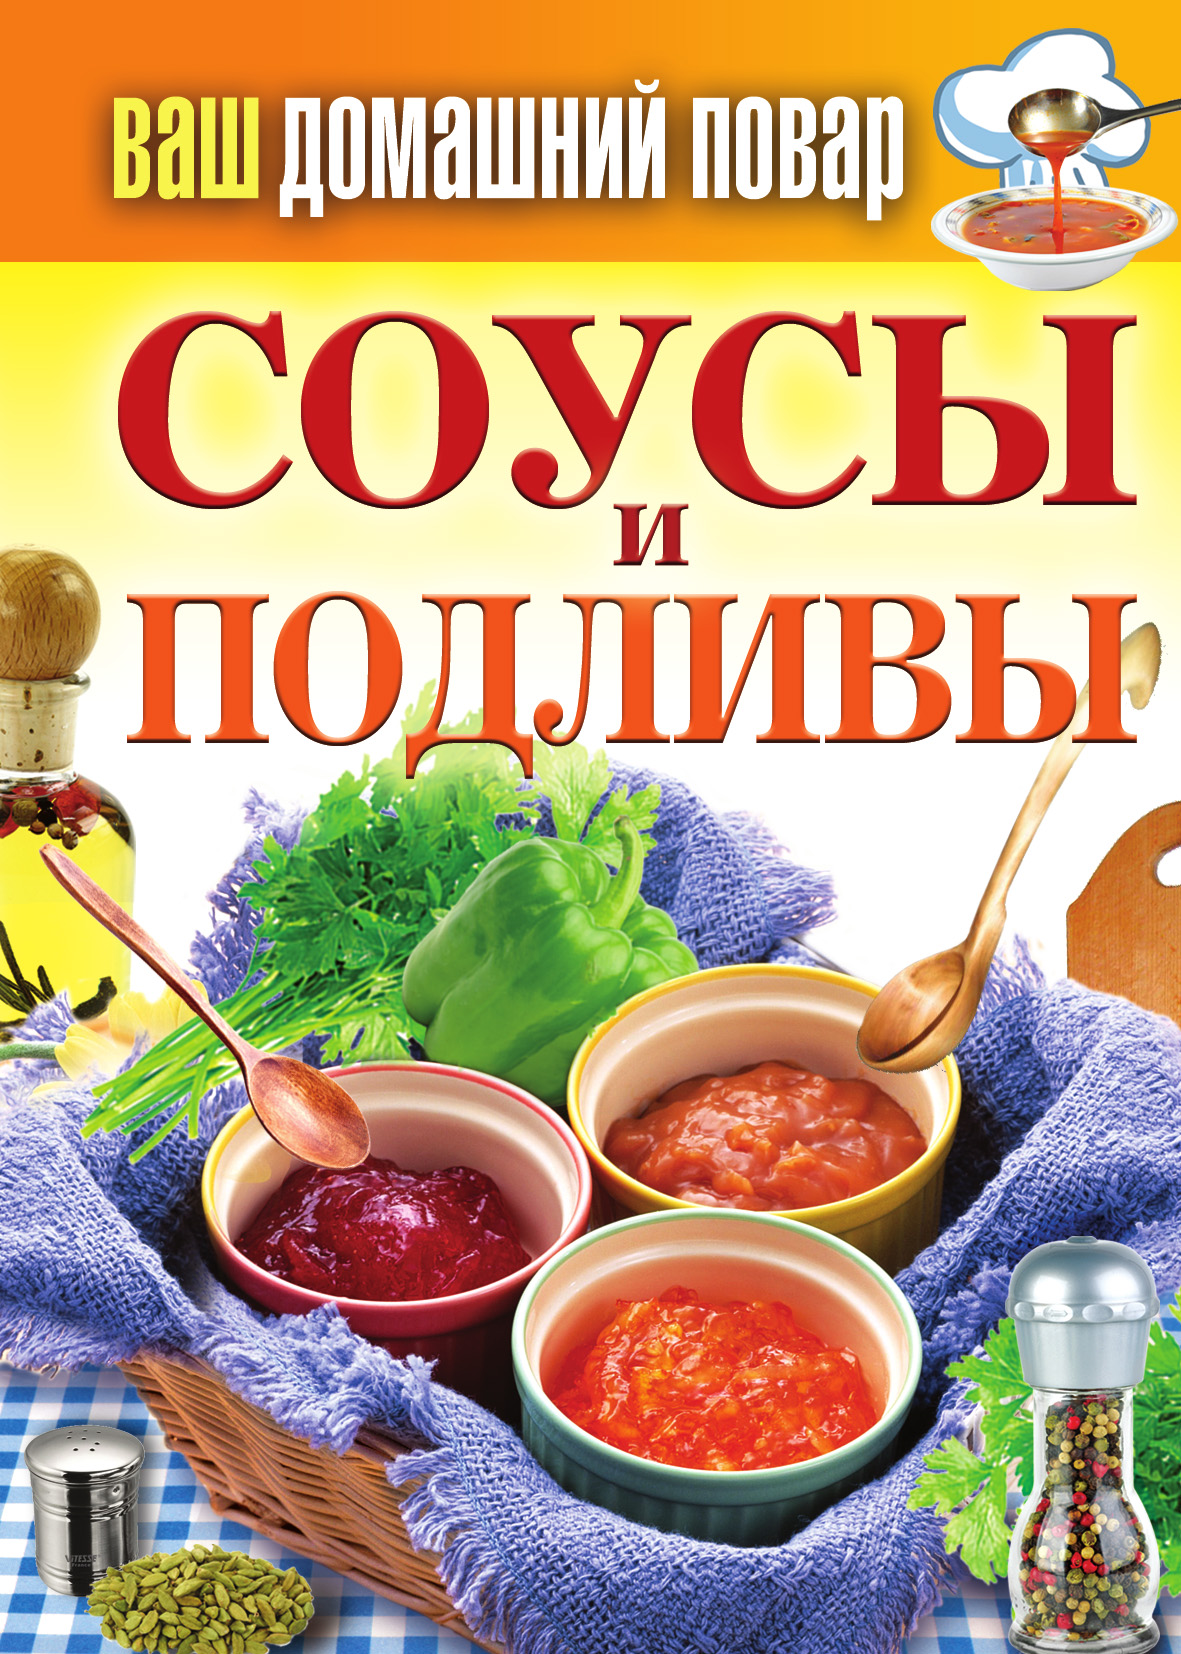 Книга Соусы и подливы из серии , созданная Сергей Кашин, может относится к жанру Кулинария. Стоимость электронной книги Соусы и подливы с идентификатором 3118665 составляет 45.00 руб.